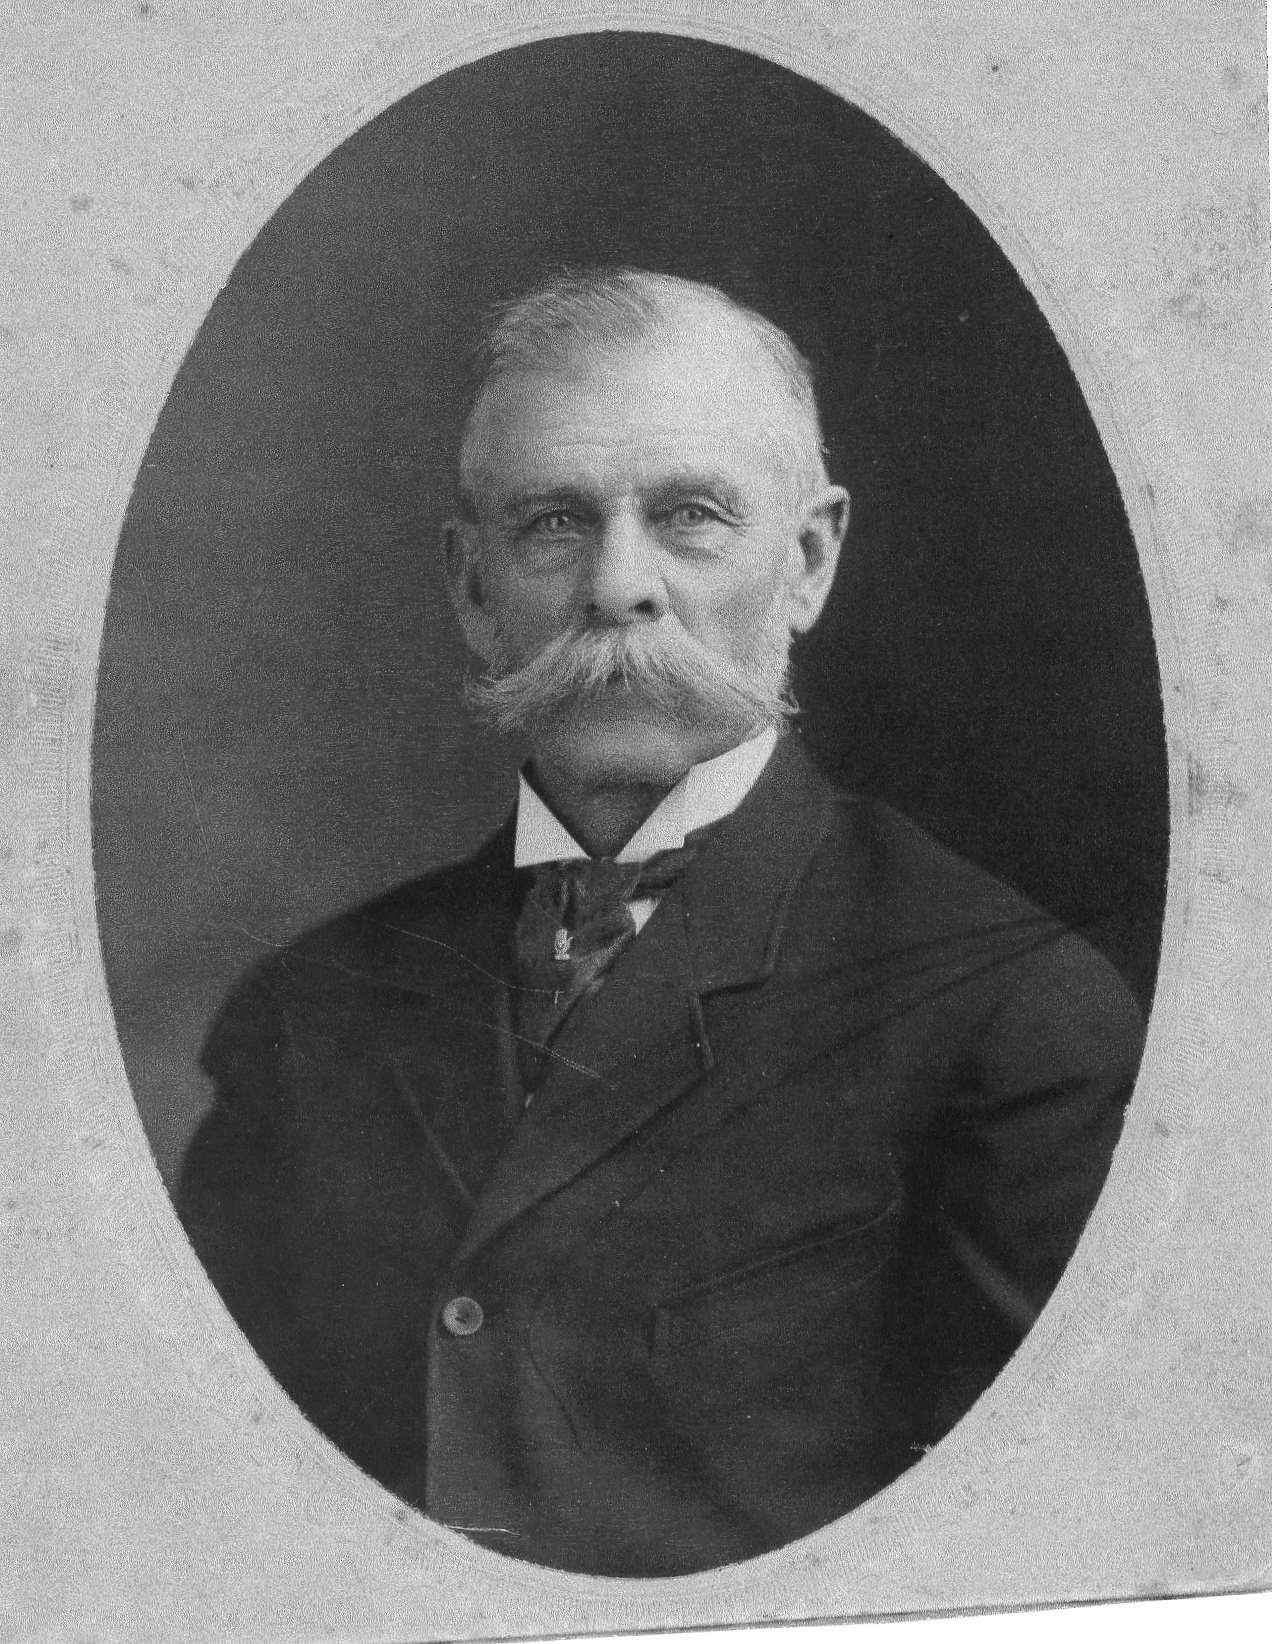 William Henry Minhinnick